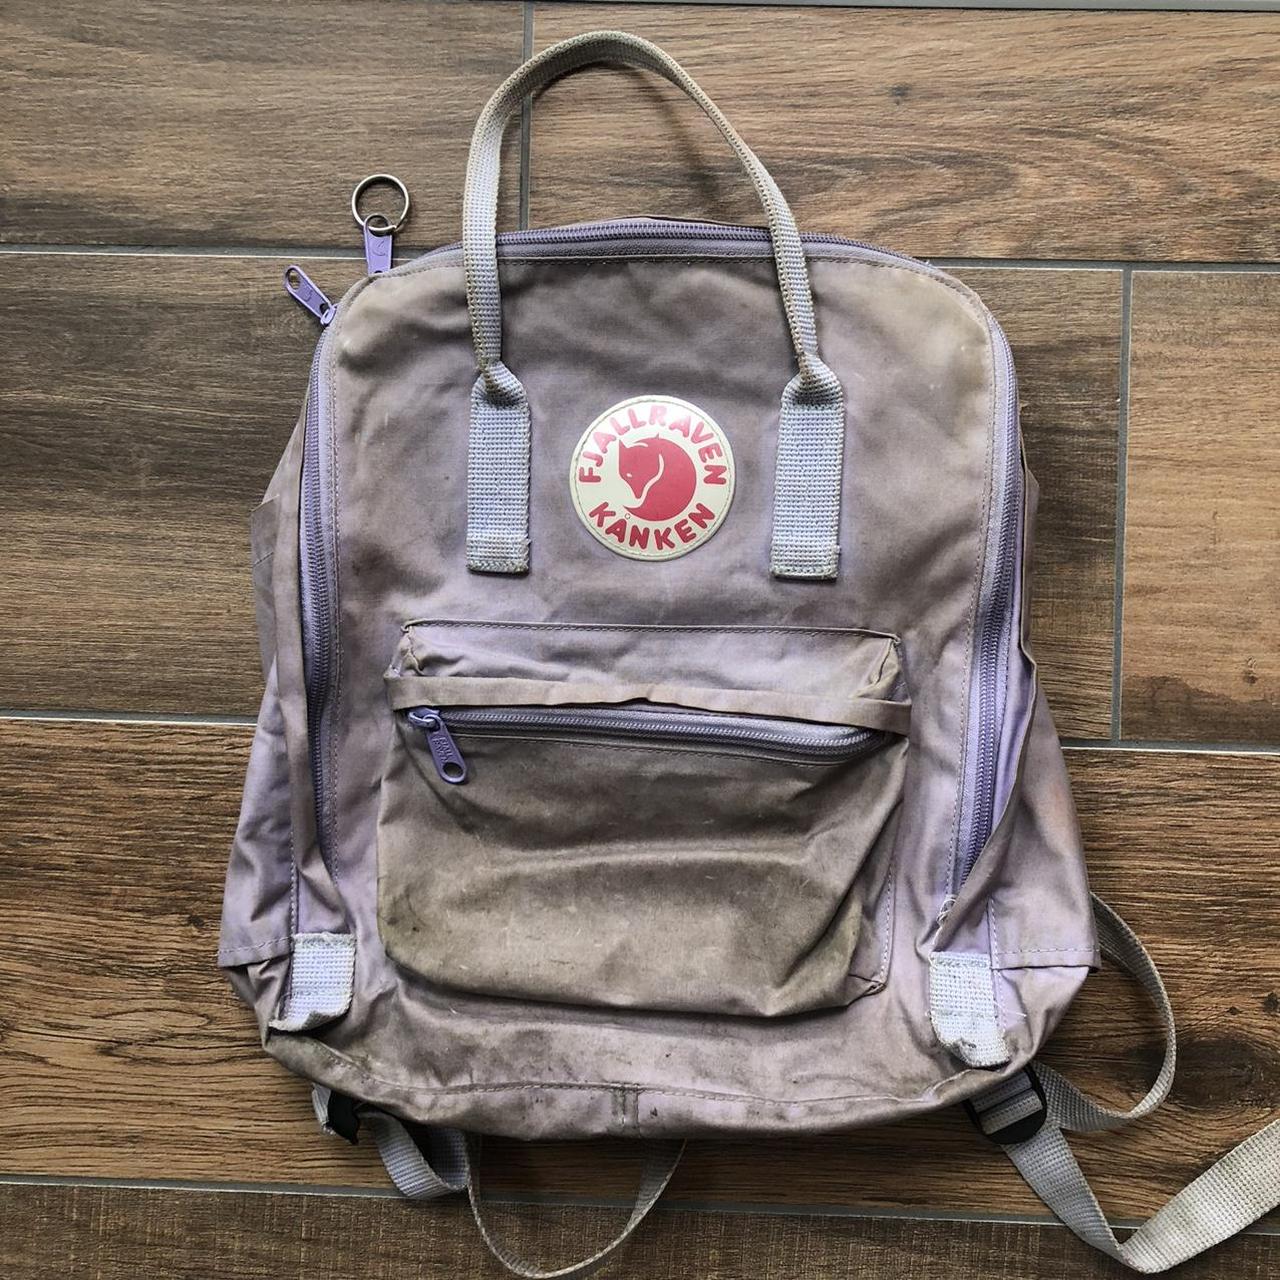 Standard Size Lilac Fjallraven Kanken Backpack Depop 4831